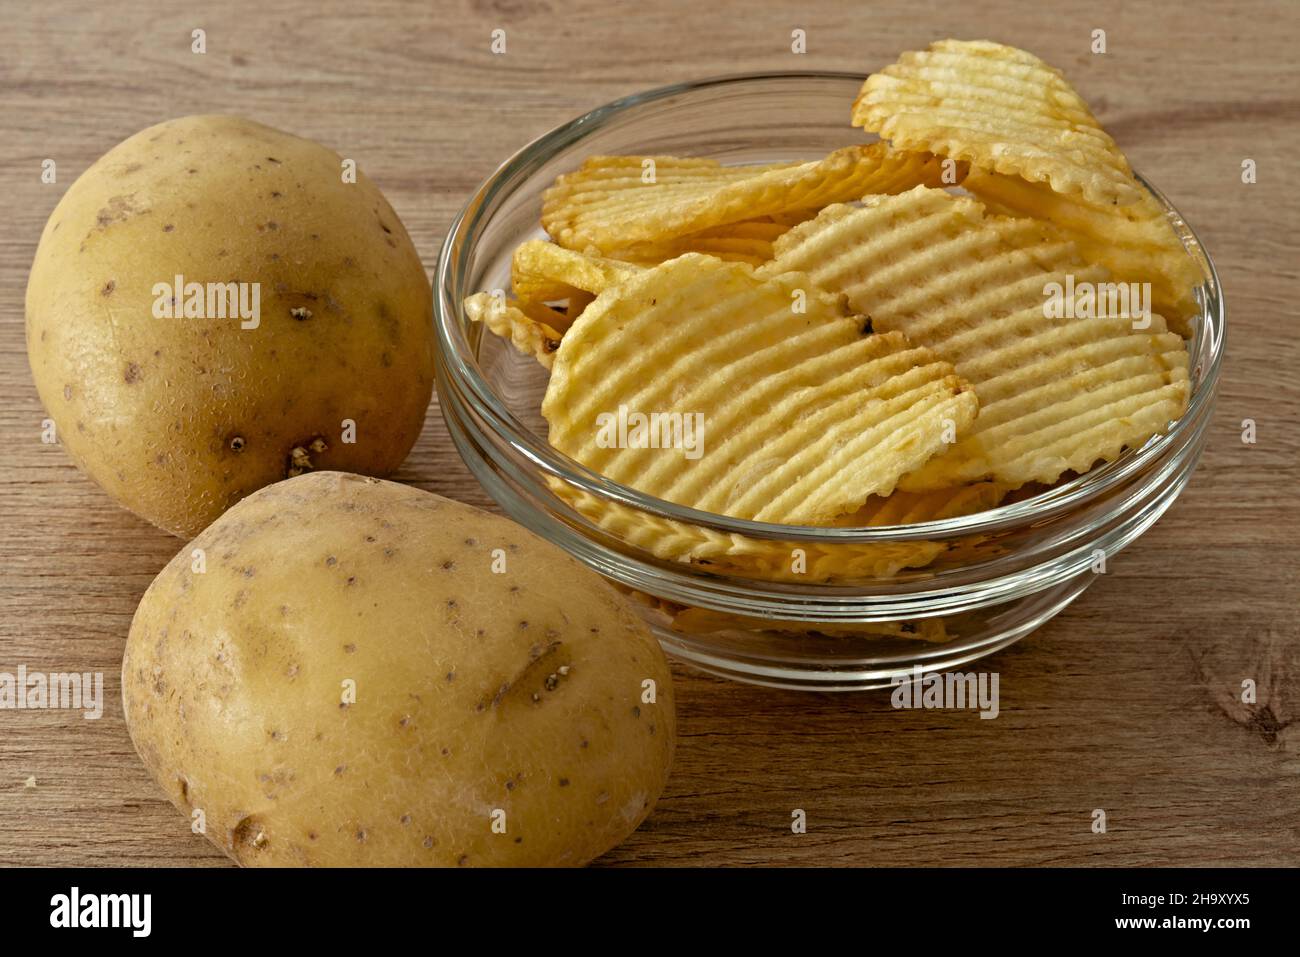 patate - patate fritte nella ciotola di vetro primo piano vista da sopra con patate fresche altra vista Banque D'Images